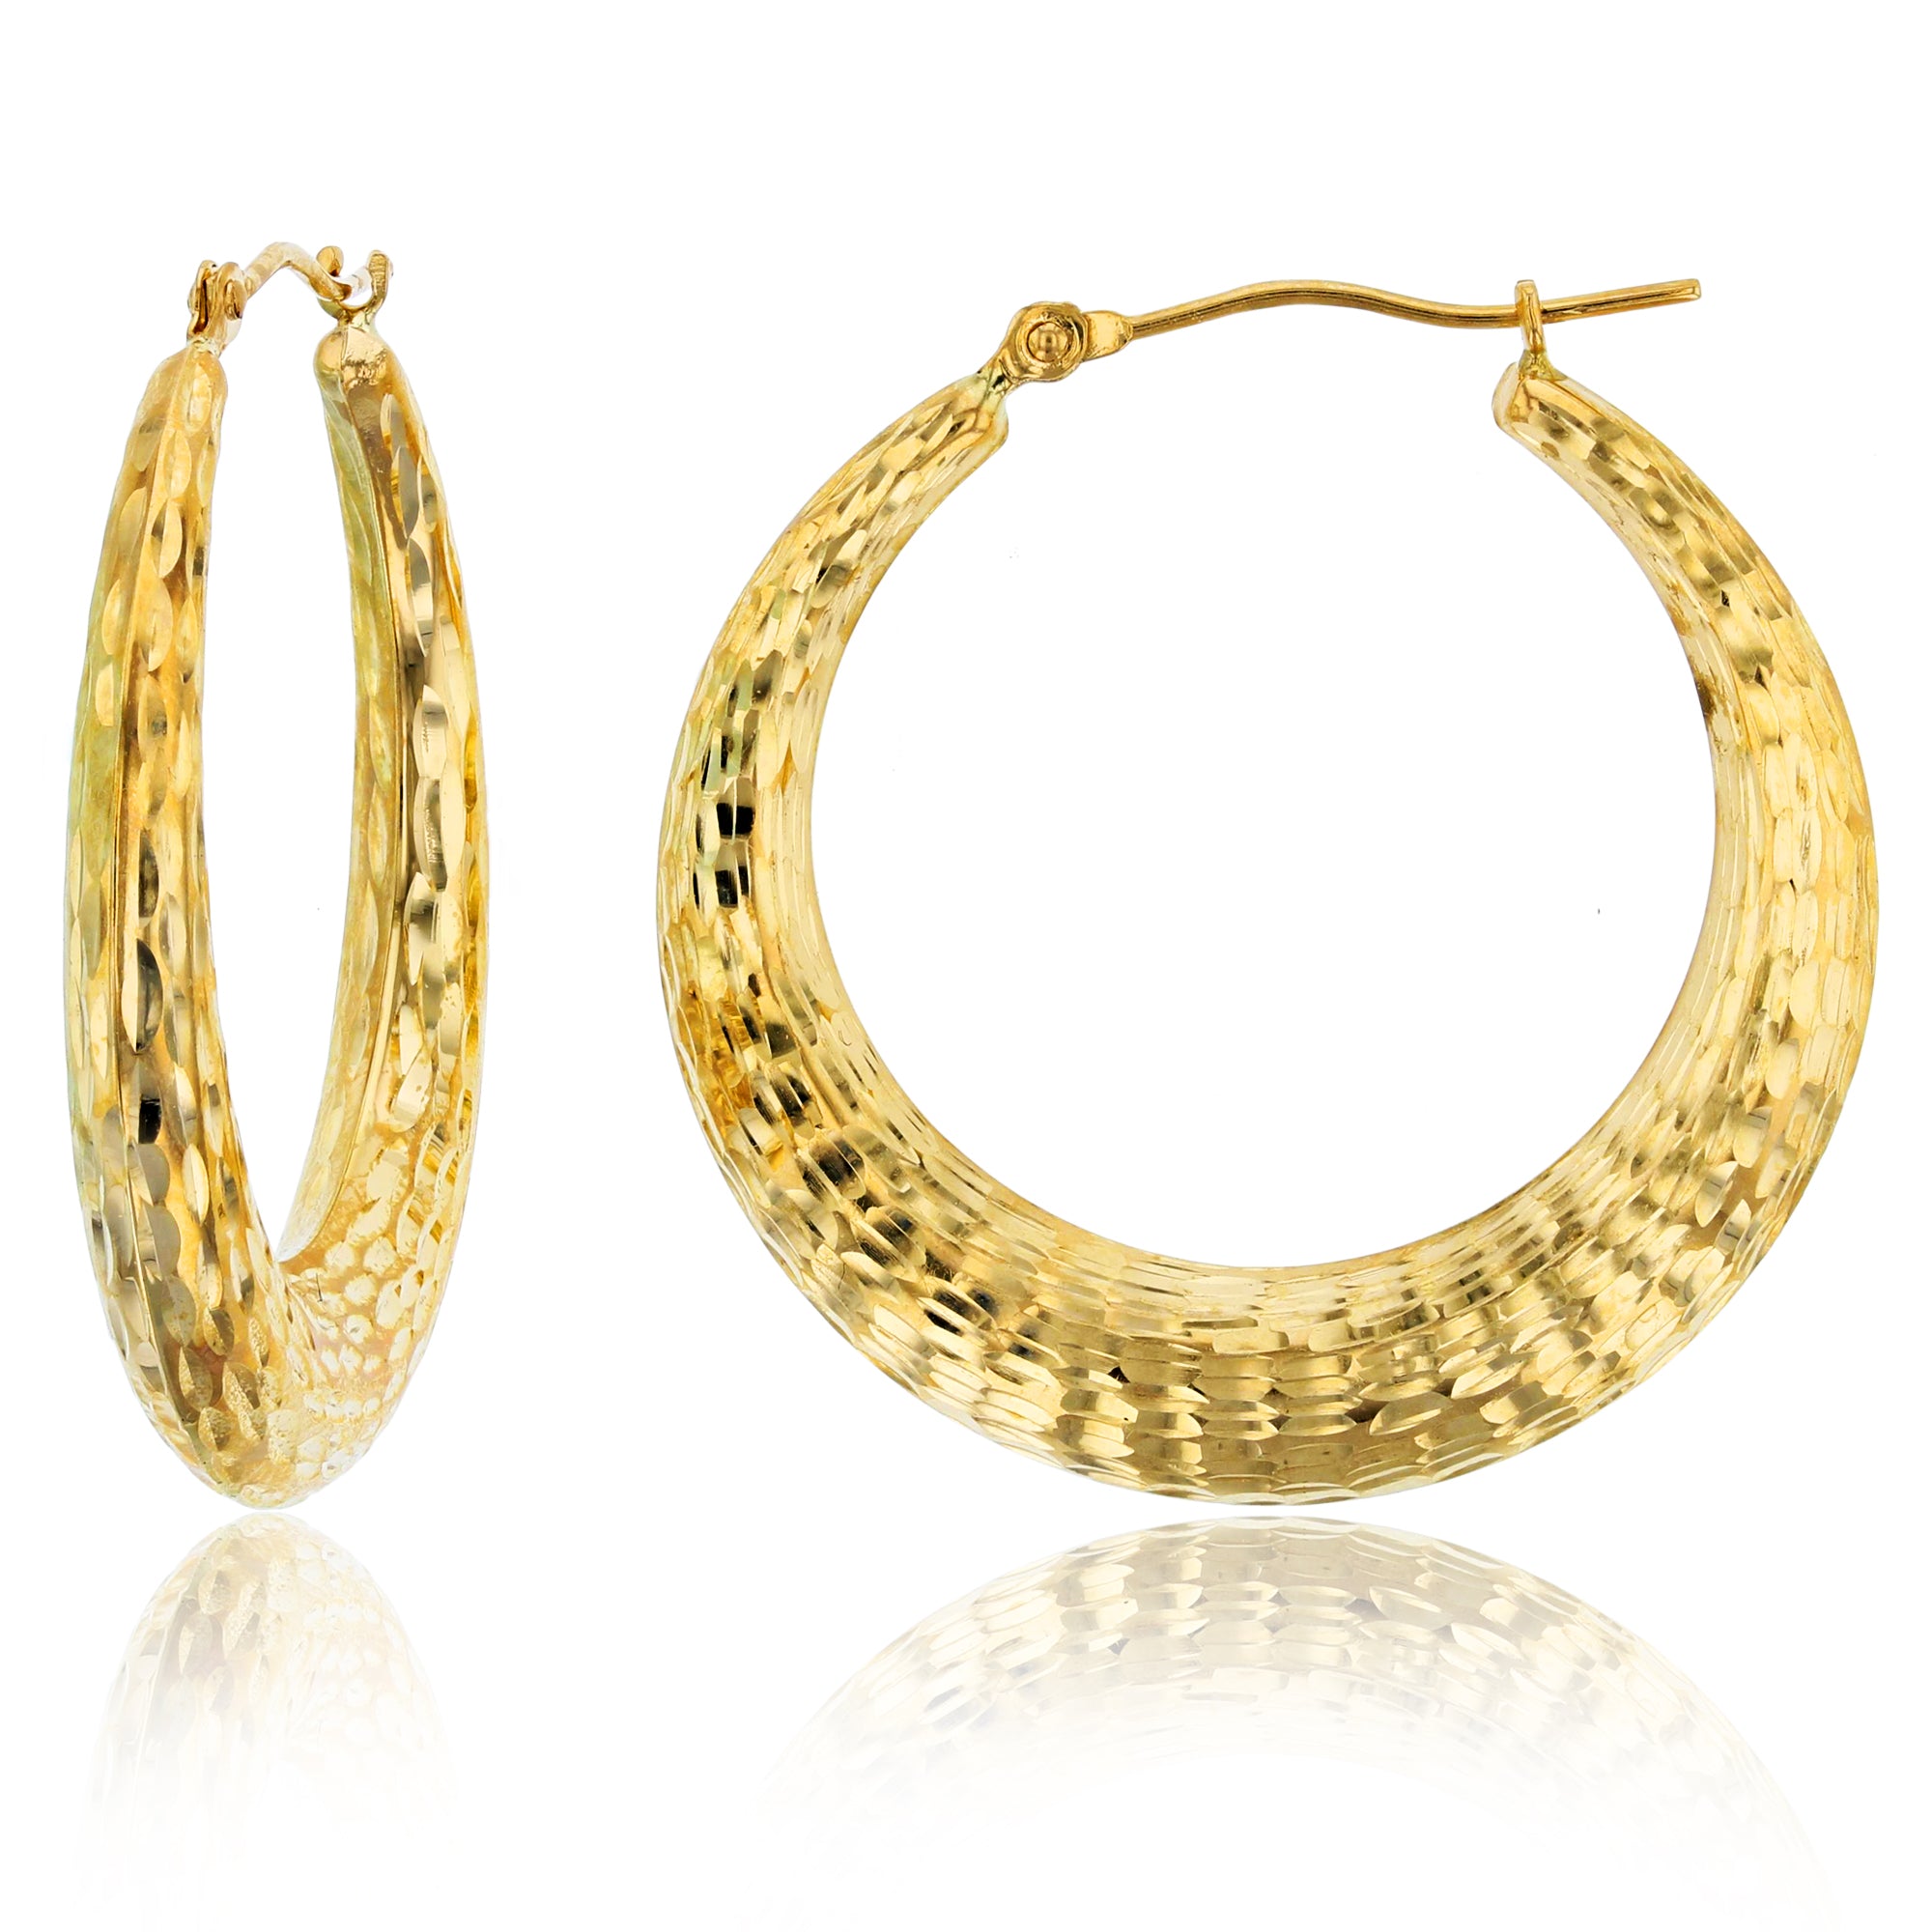 Gold Fancy Flower Shaped Earrings at Rs 4150/gram in Ludhiana | ID:  21848182412